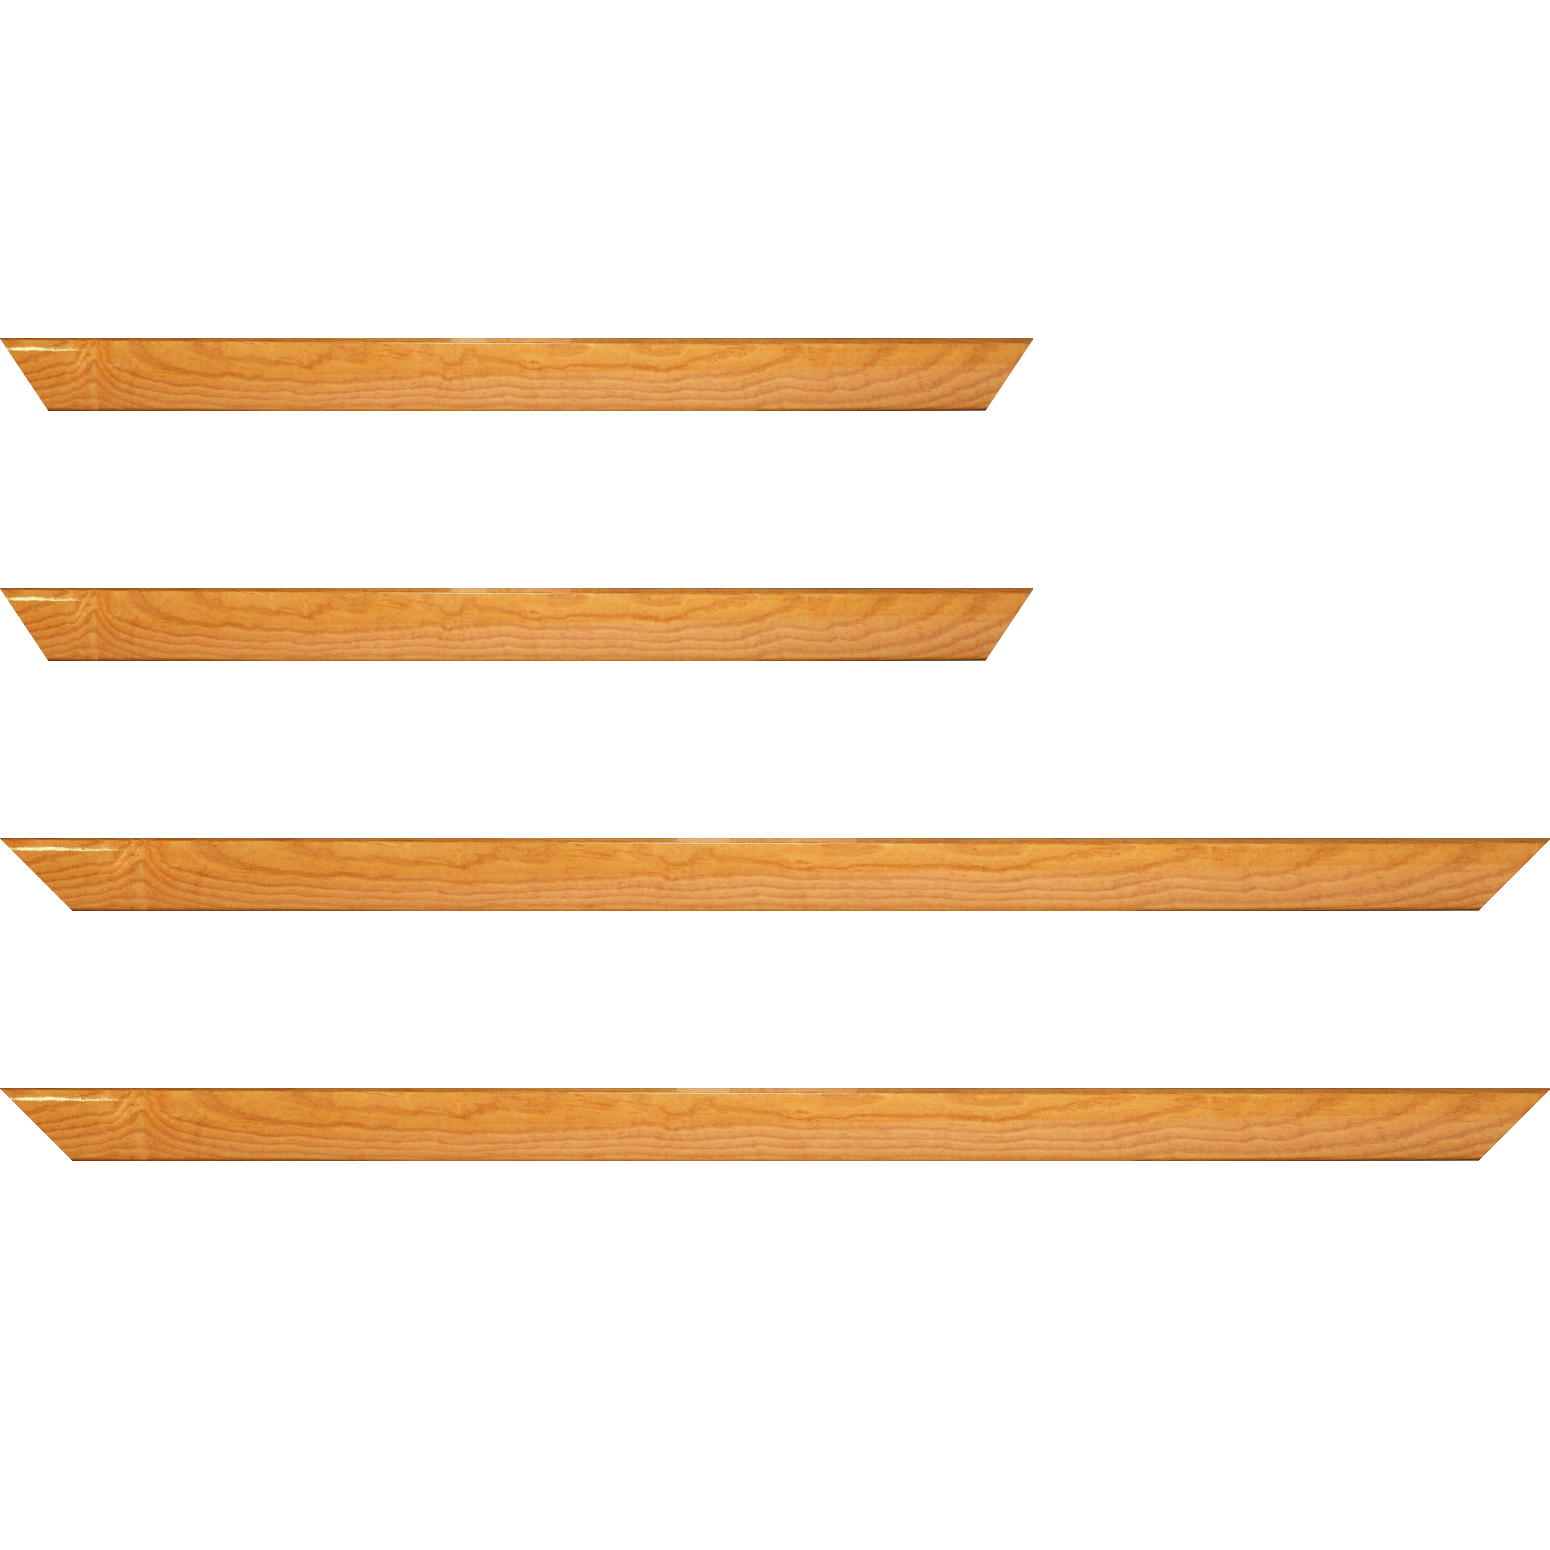 Baguette bois profil arrondi en pente plongeant largeur 2.4cm couleur jaune moutarde finition vernis brillant,veine du bois  apparent (pin) , - 35x24